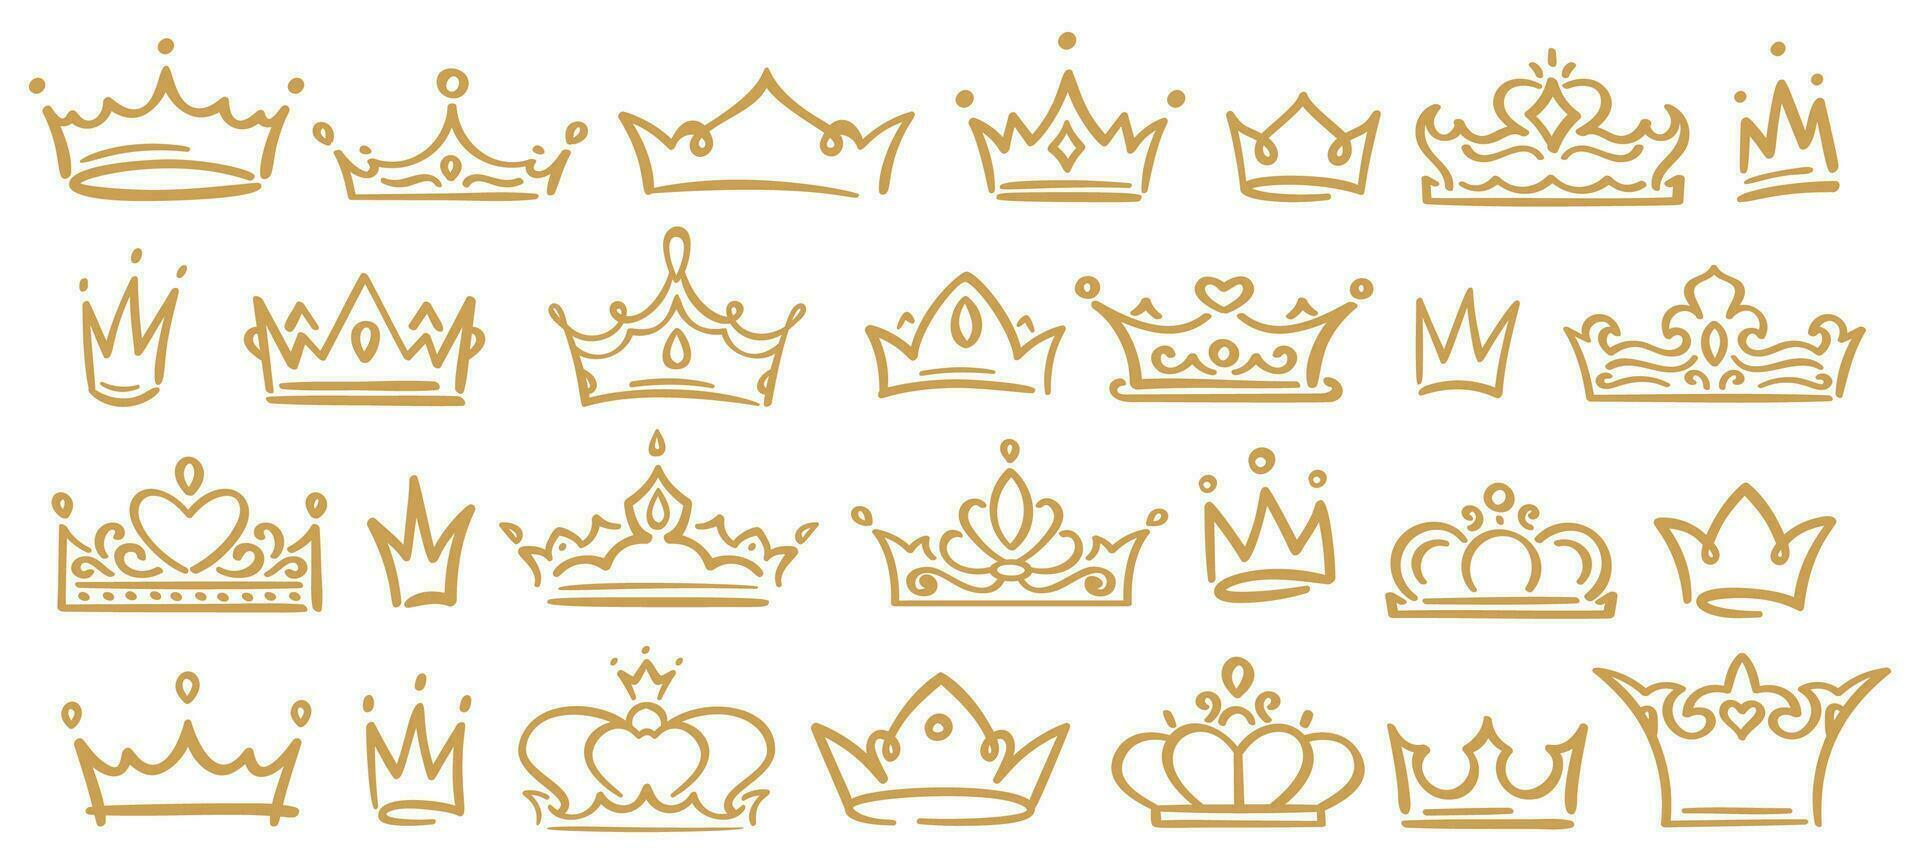 guld skiss kronor, hand drunkna kunglig diadems för drottning, prinsessa, vinnare eller mästare. kronor med dekoration vektor